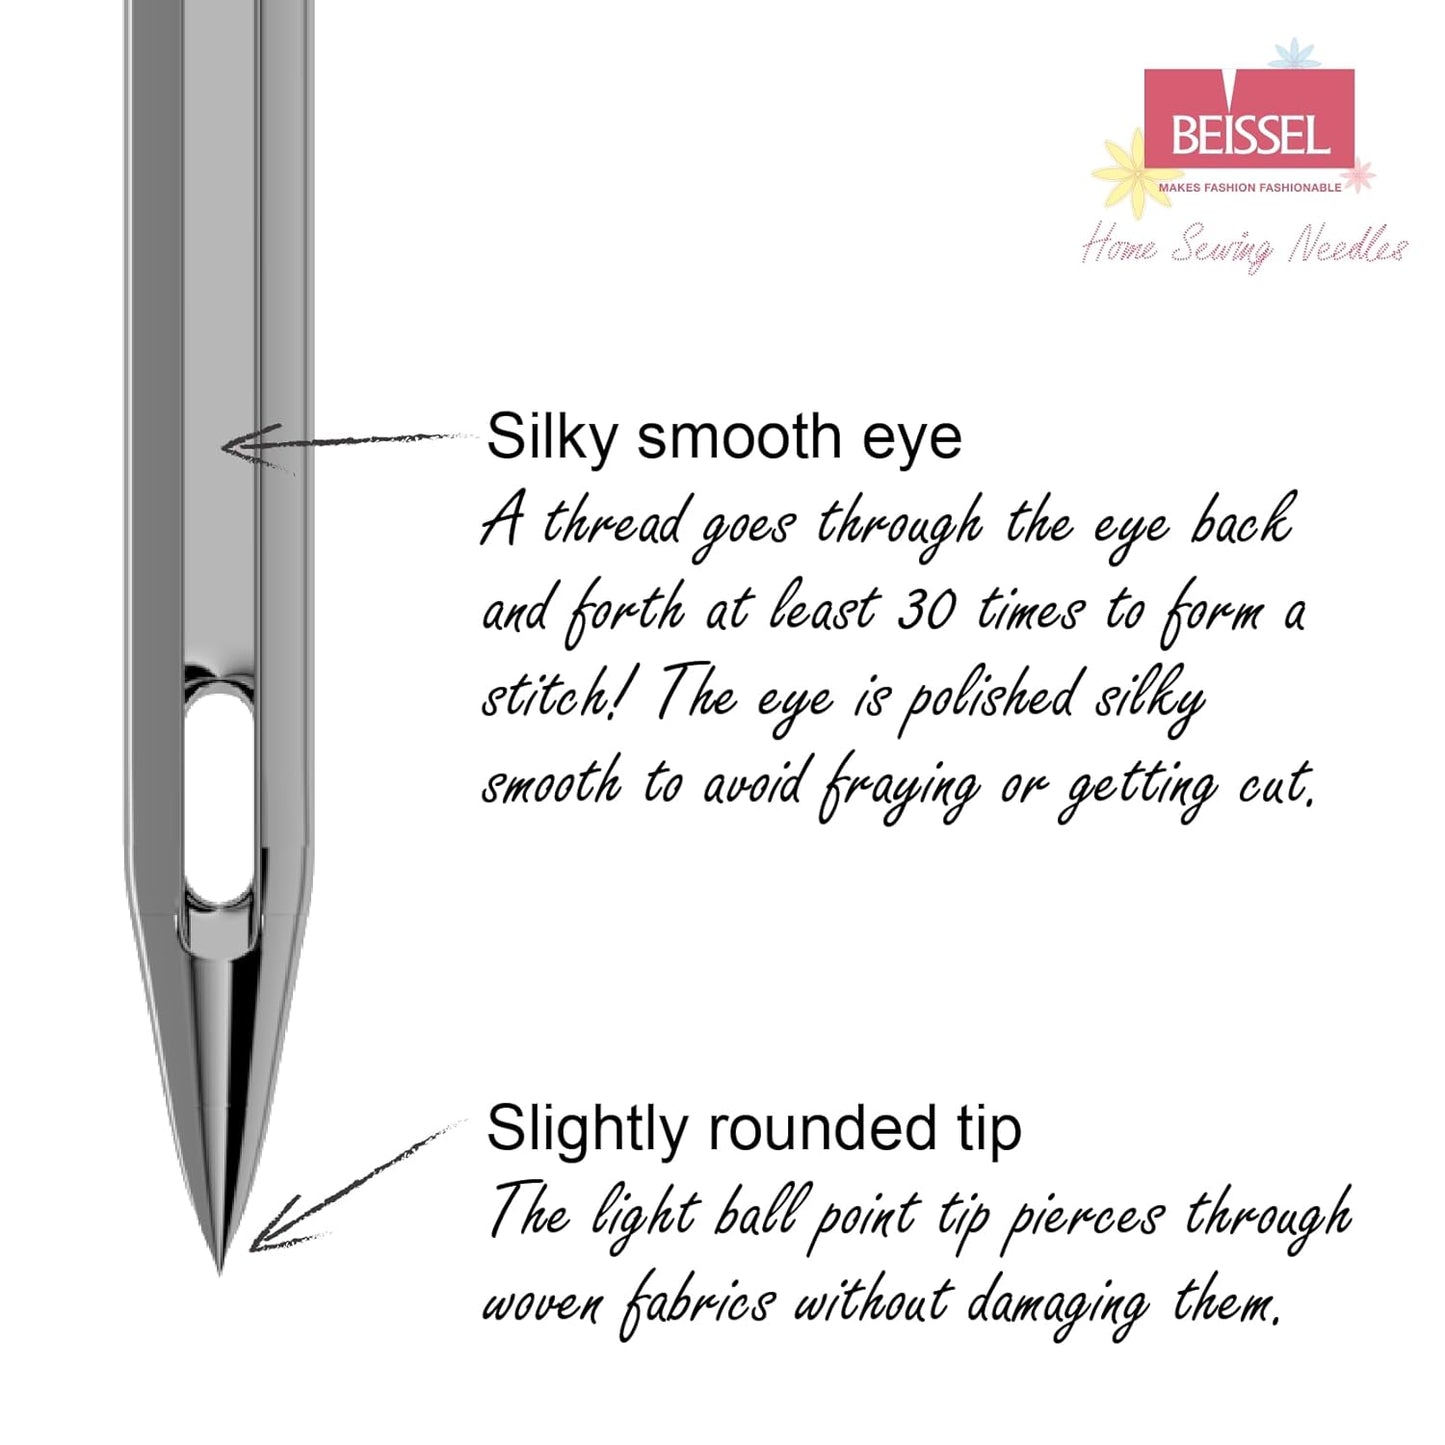 Round Shank Needle | Size (70 to 100)